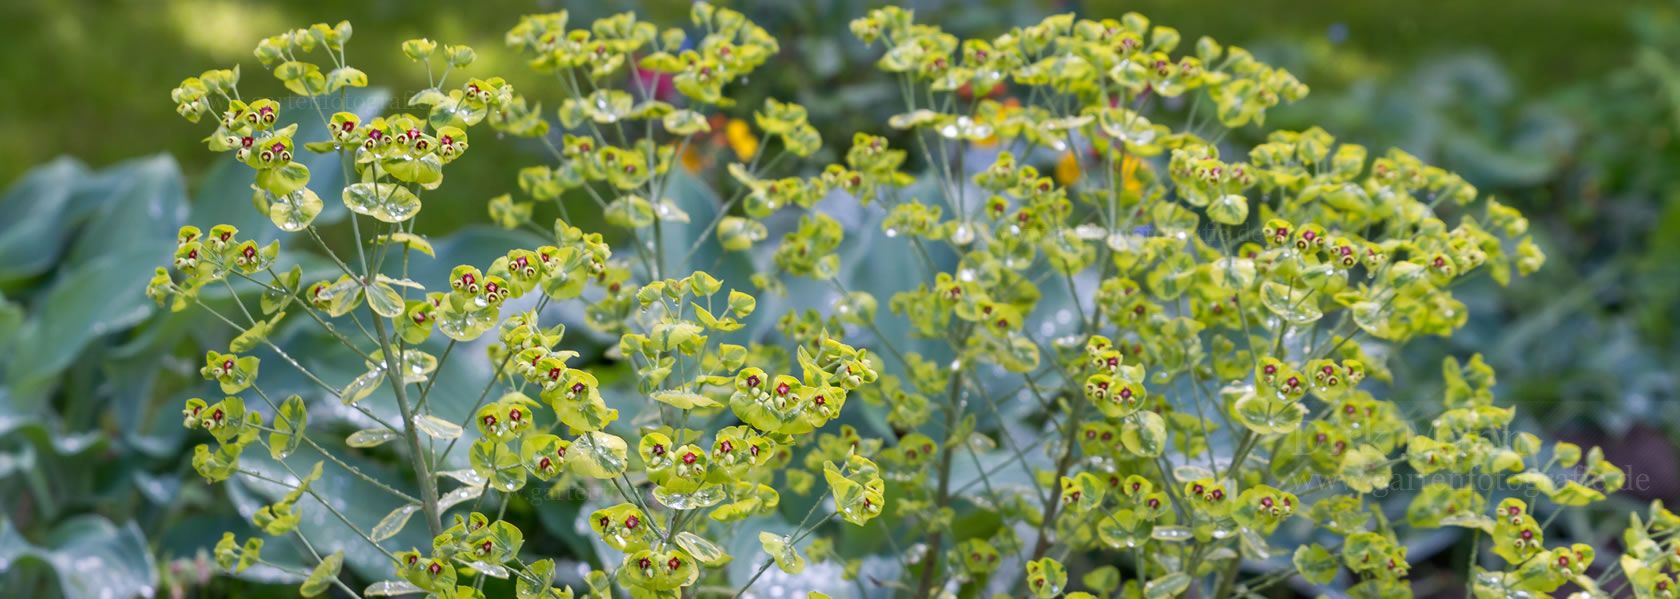 Euphorbia / Wolfsmilch aus der Kräuter- und Staudengärtnerei in Sachsen bei Dresden